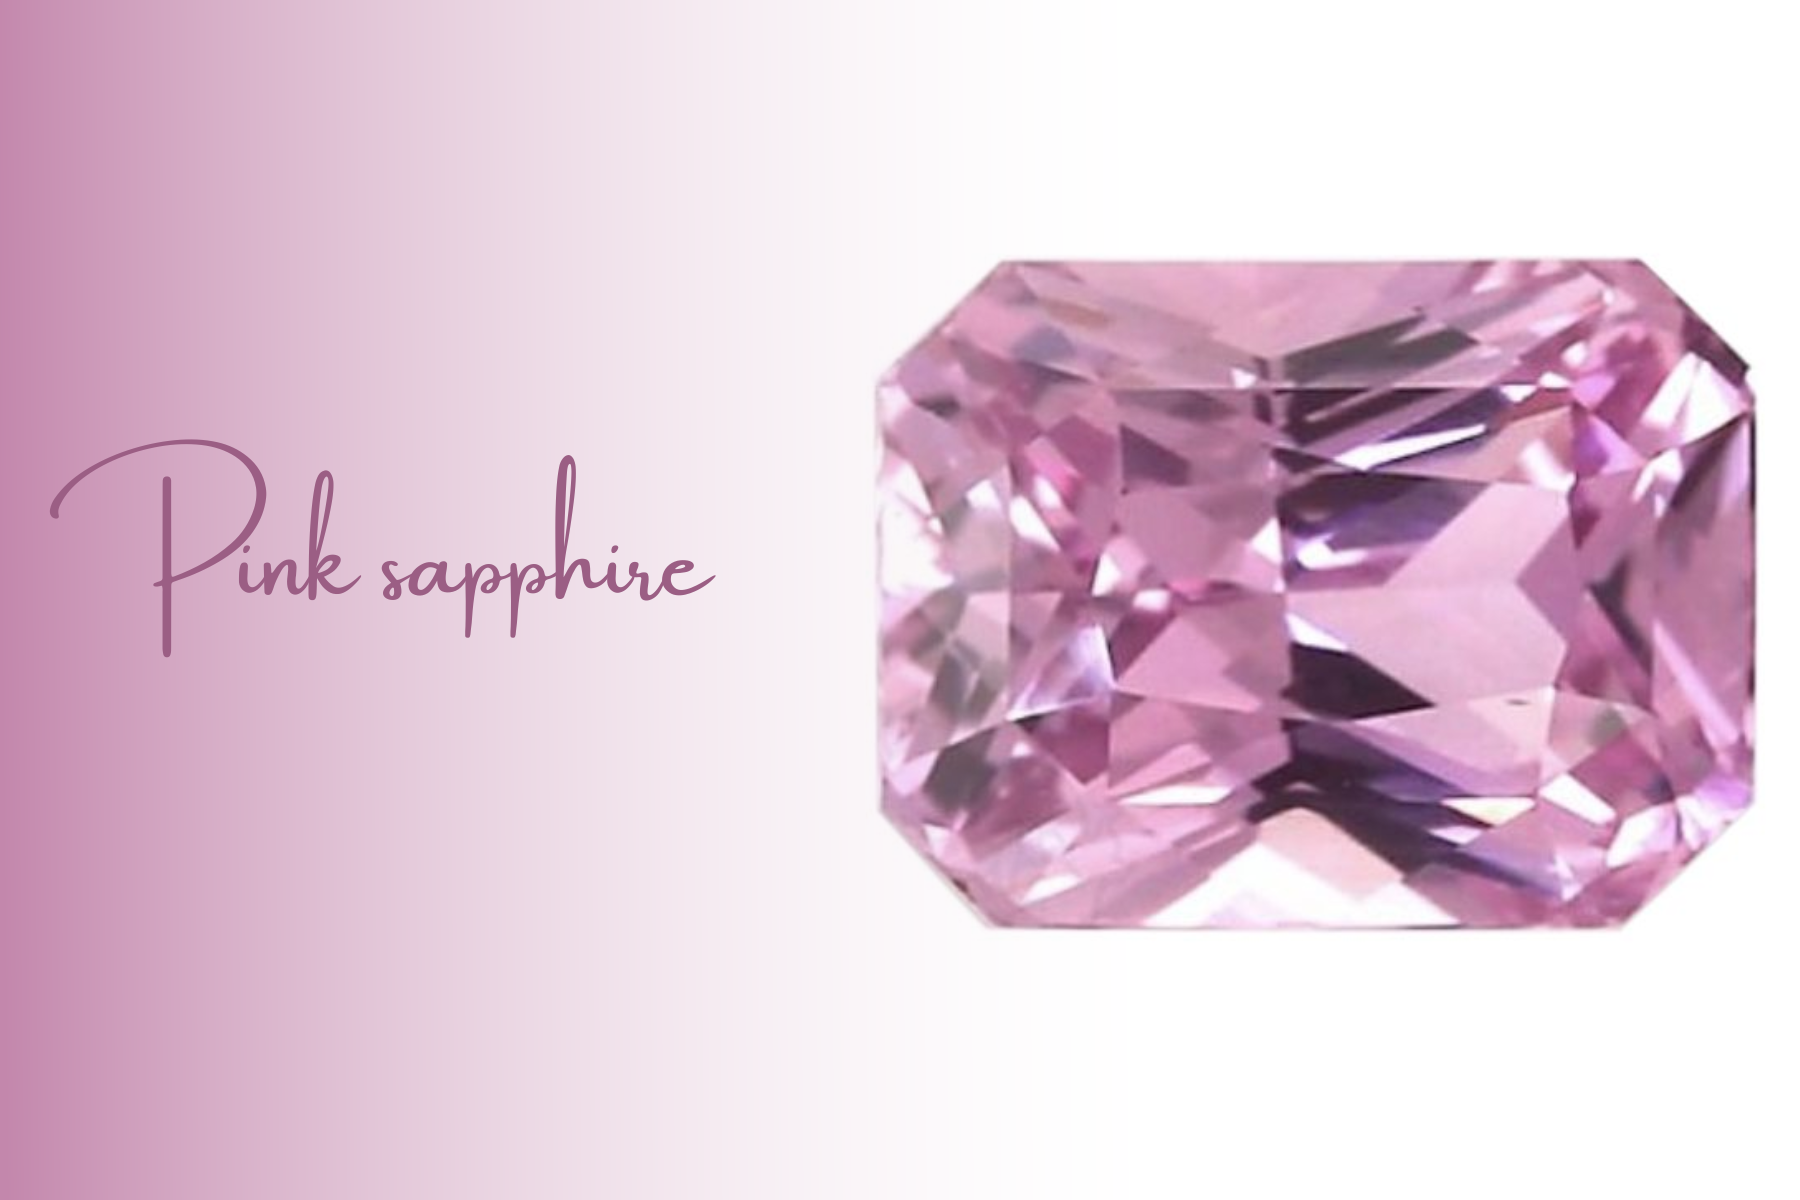 An octagonal pink sapphire